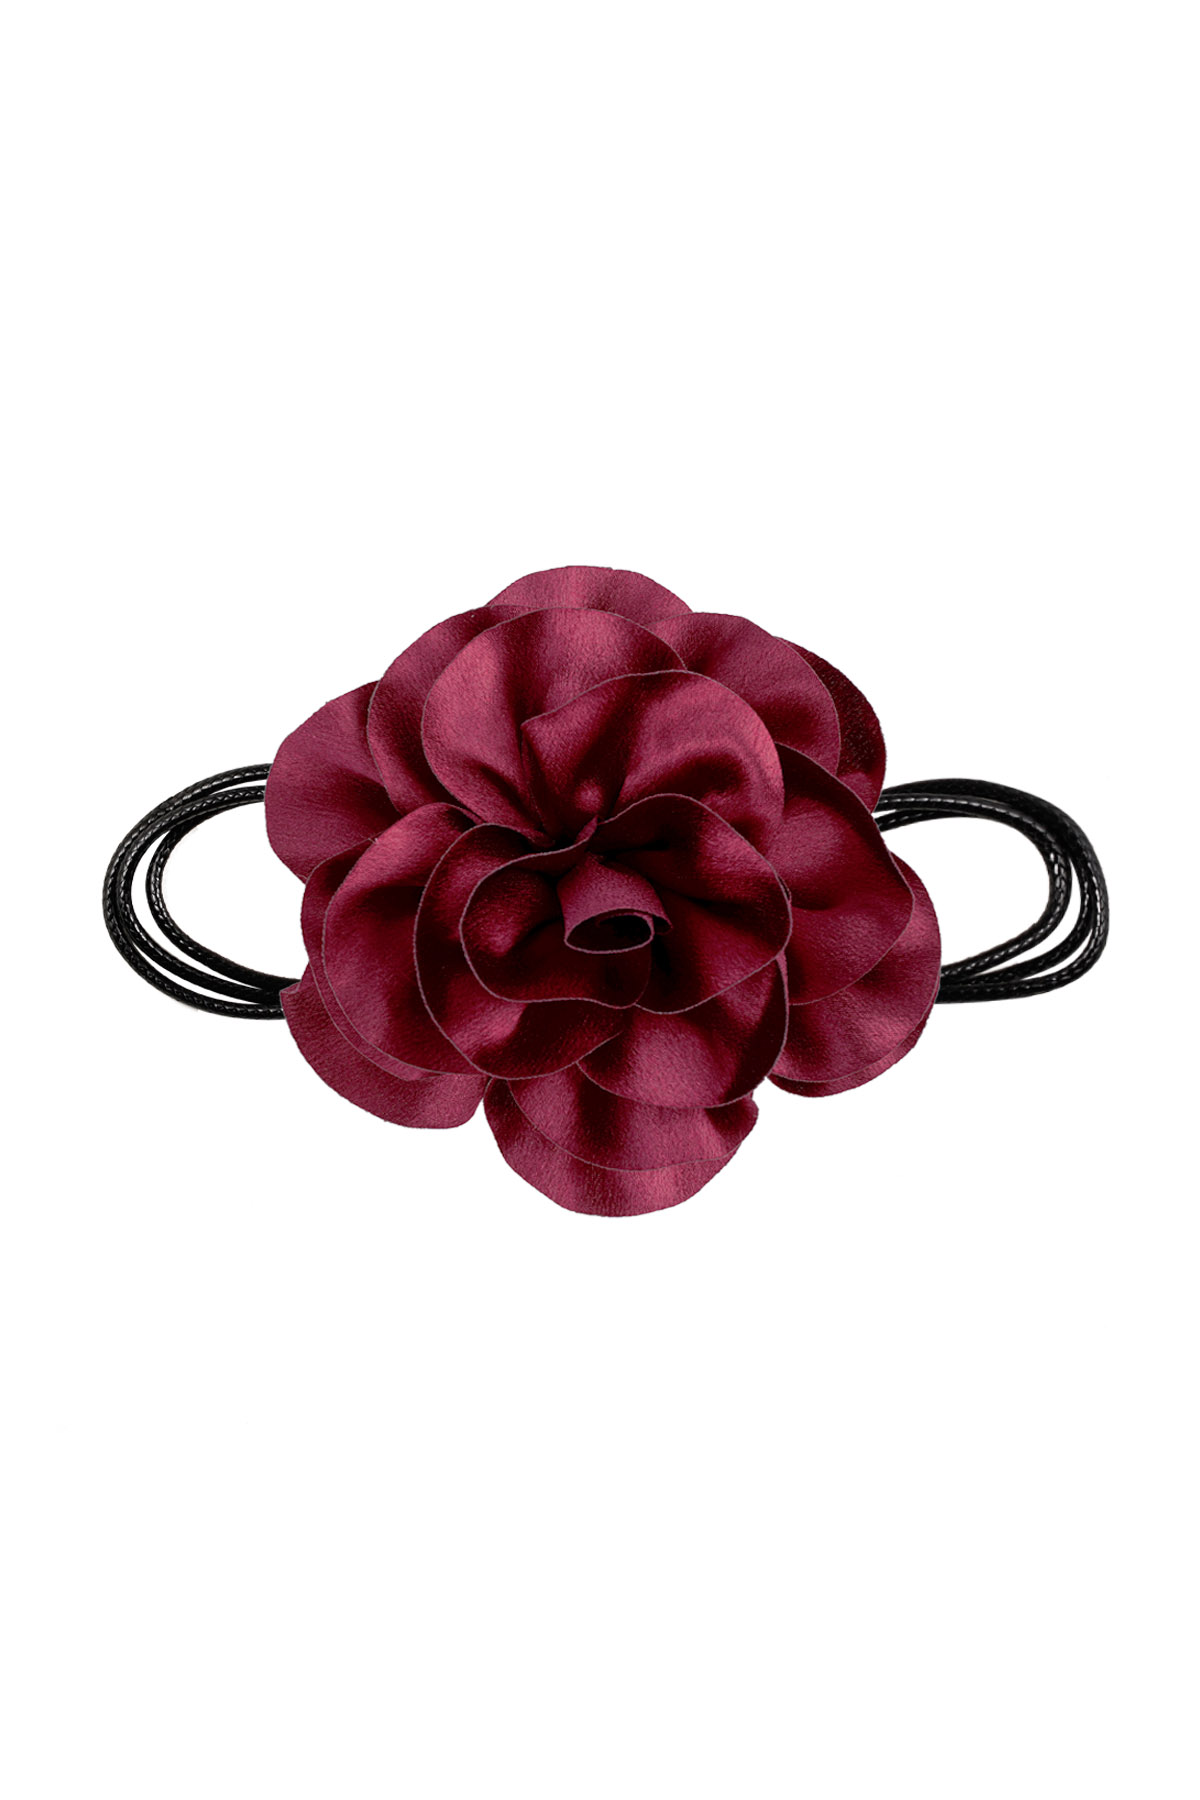 Collana corda fiore lucido - rosso scuro h5 